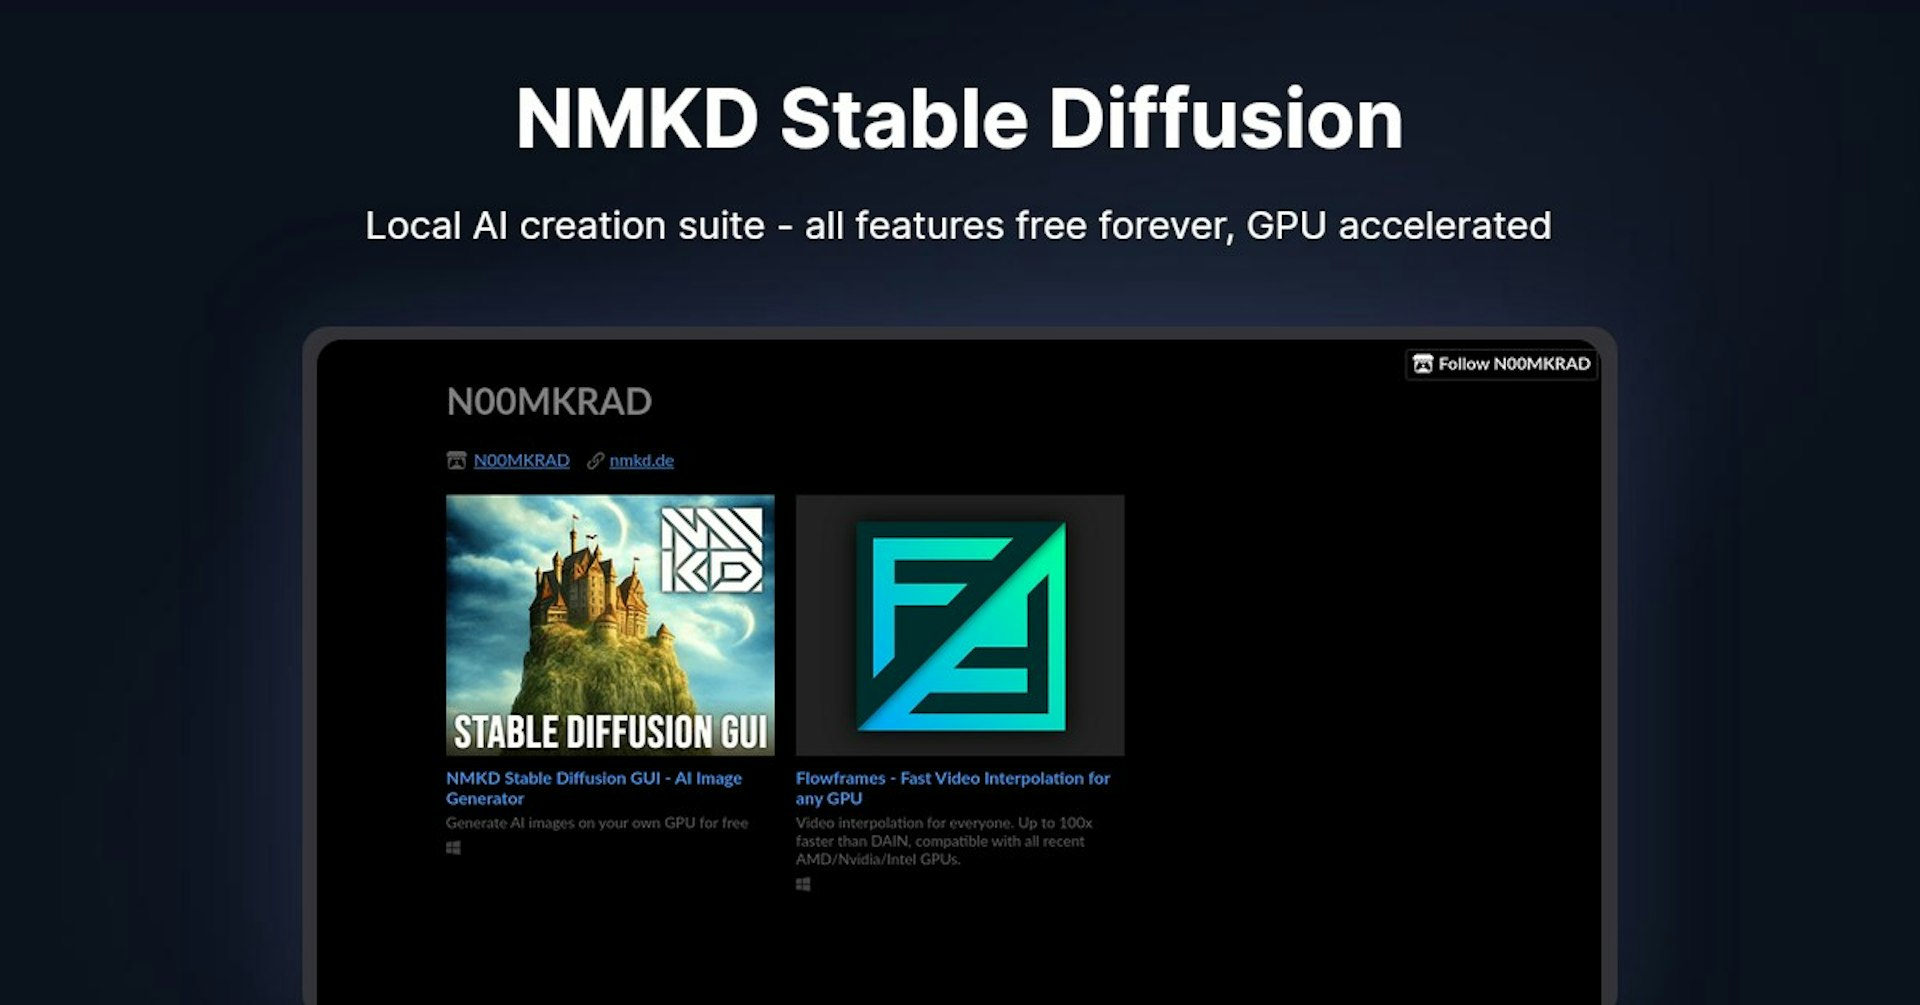 NMKD Stable Diffusion